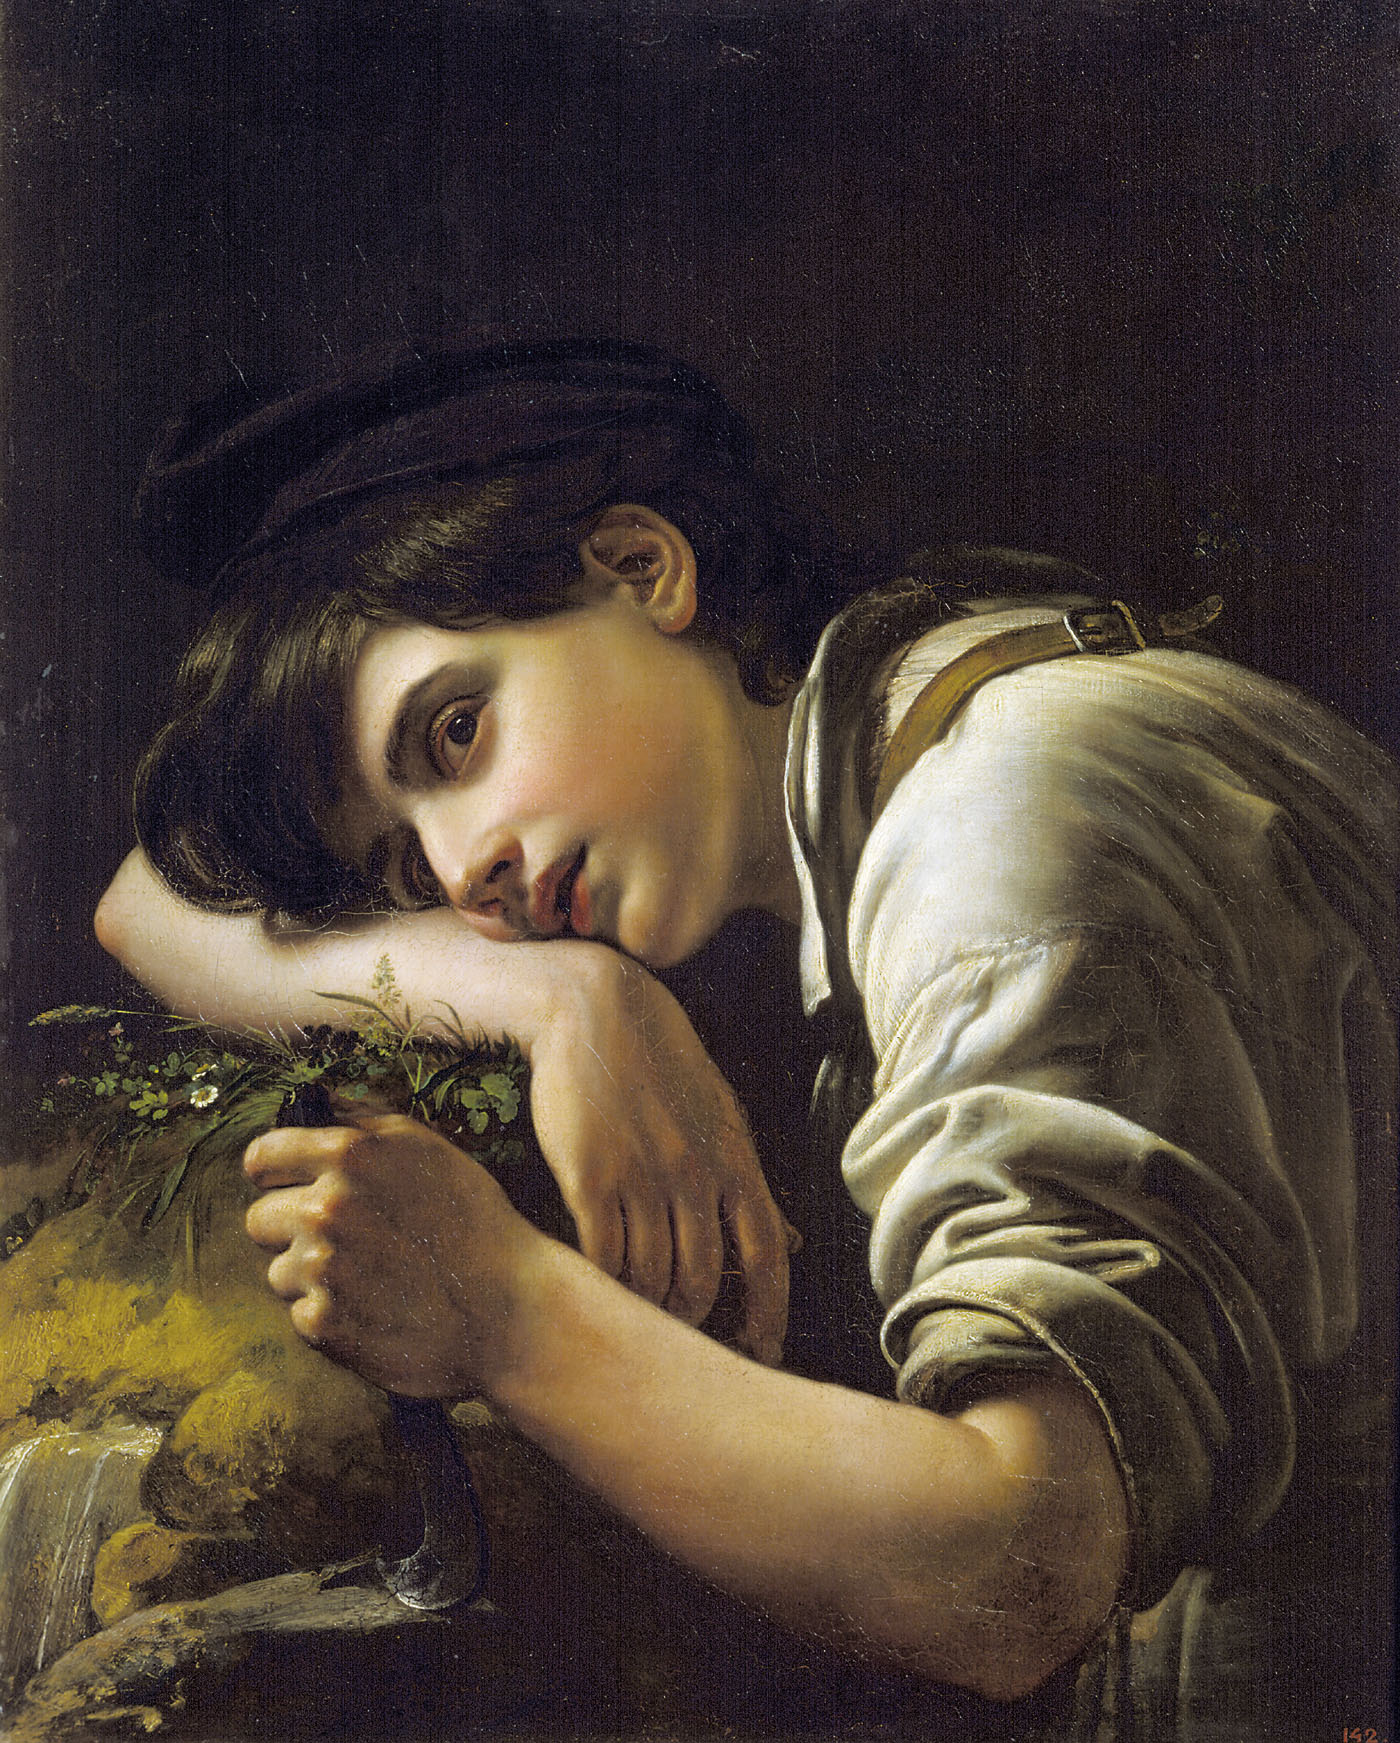 Орест Адамович Кипренский. "Молодой садовник". 1817.